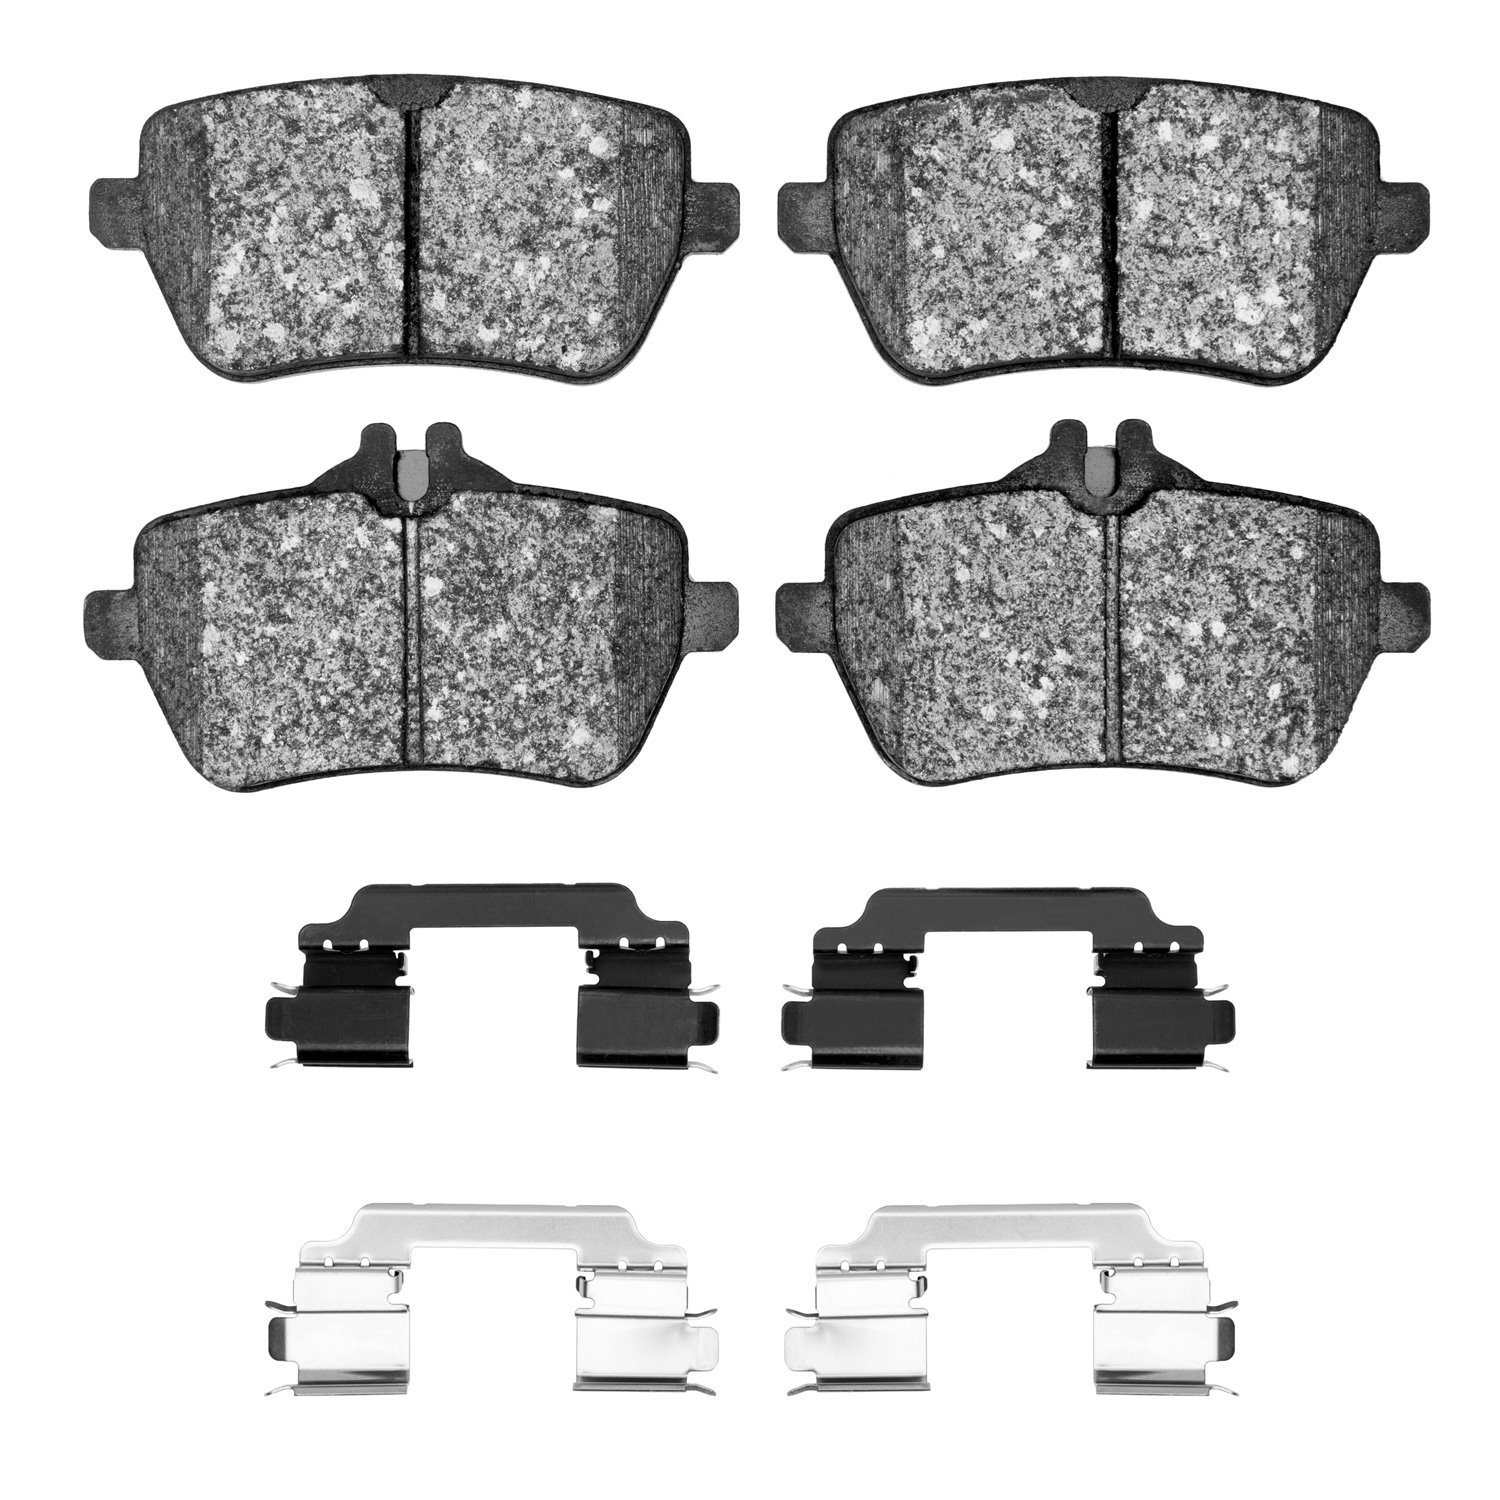 1310-1689-01 3000-Series Ceramic Brake Pads & Hardware Kit, 2013-2021 Mercedes-Benz, Position: Rear